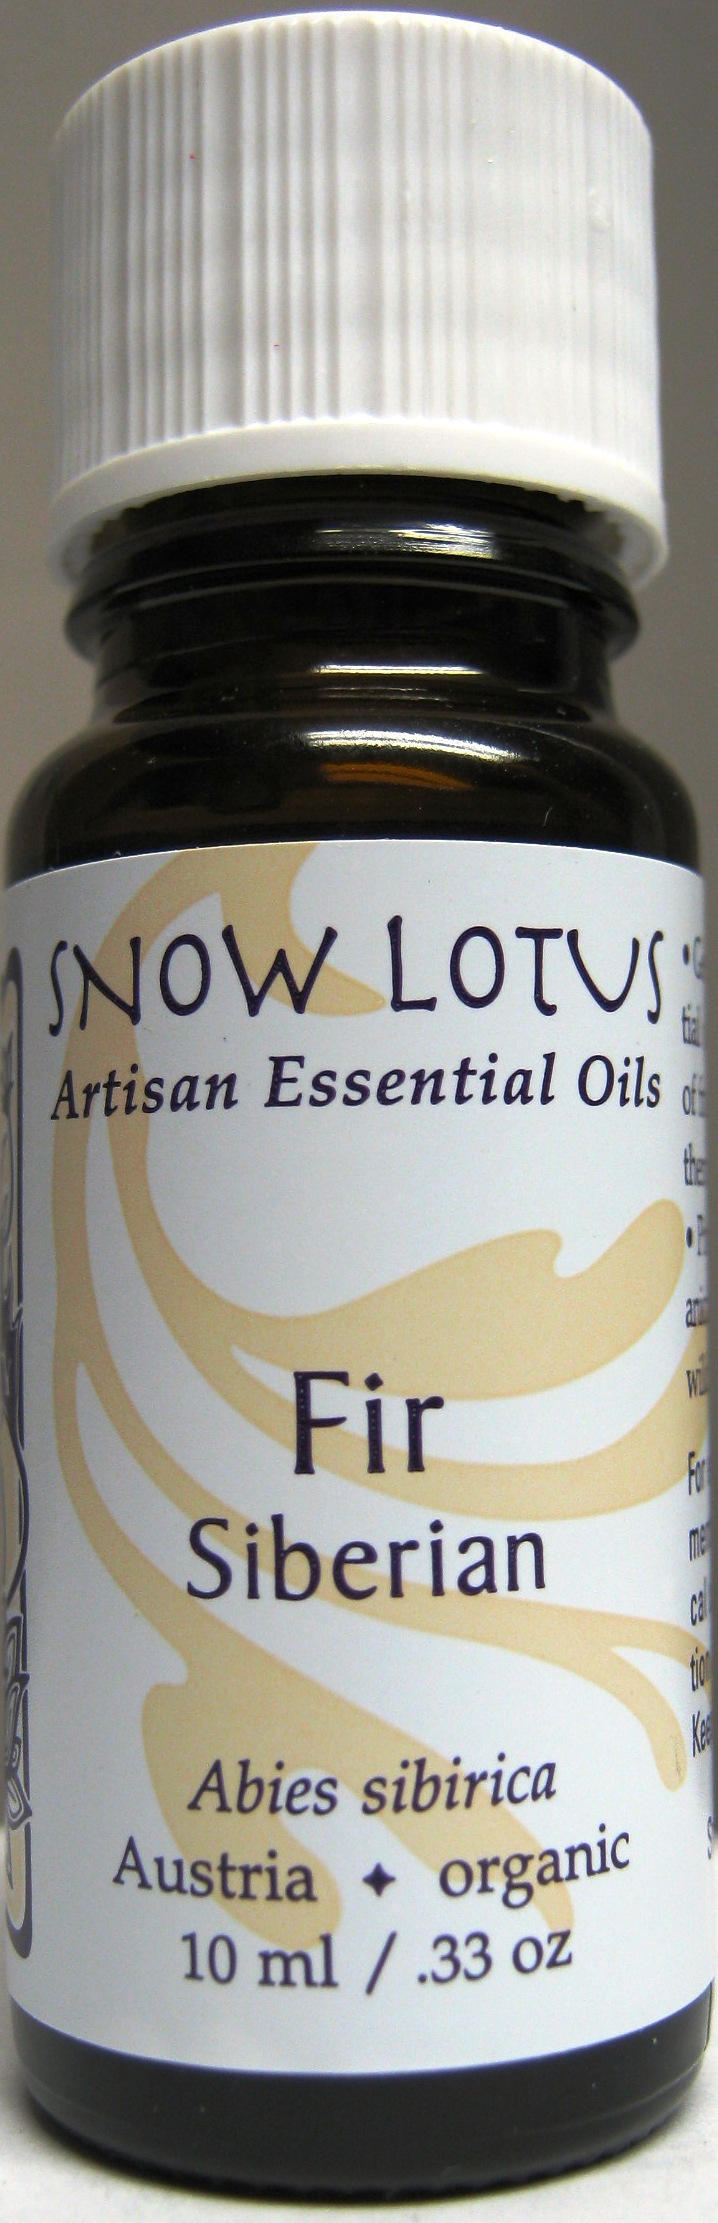 Fir (Siberian) Essential Oil